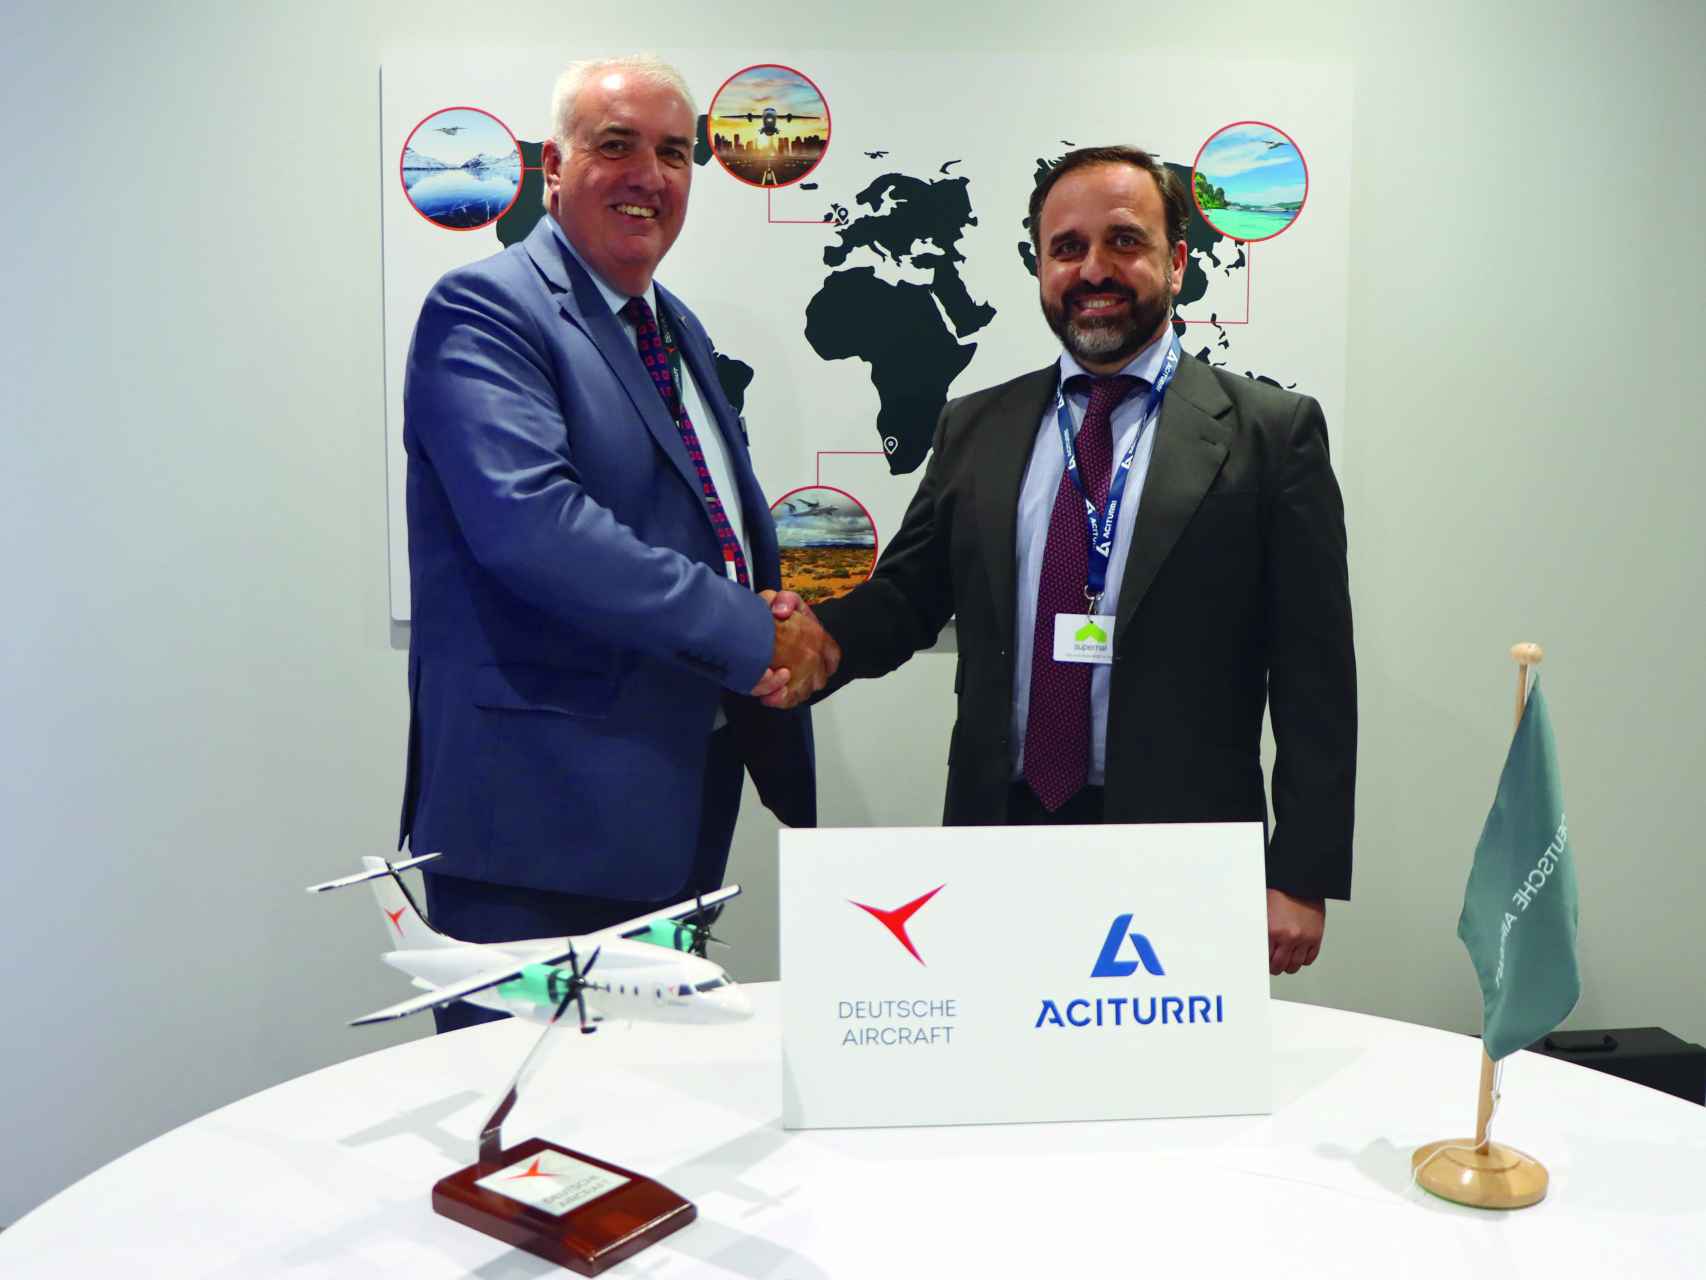 Álvaro Fernández-Baragaño (d), CEO de Aciturri Aeronáutica, junto a Dave Jackson, CEO de Deutsche Aircraft